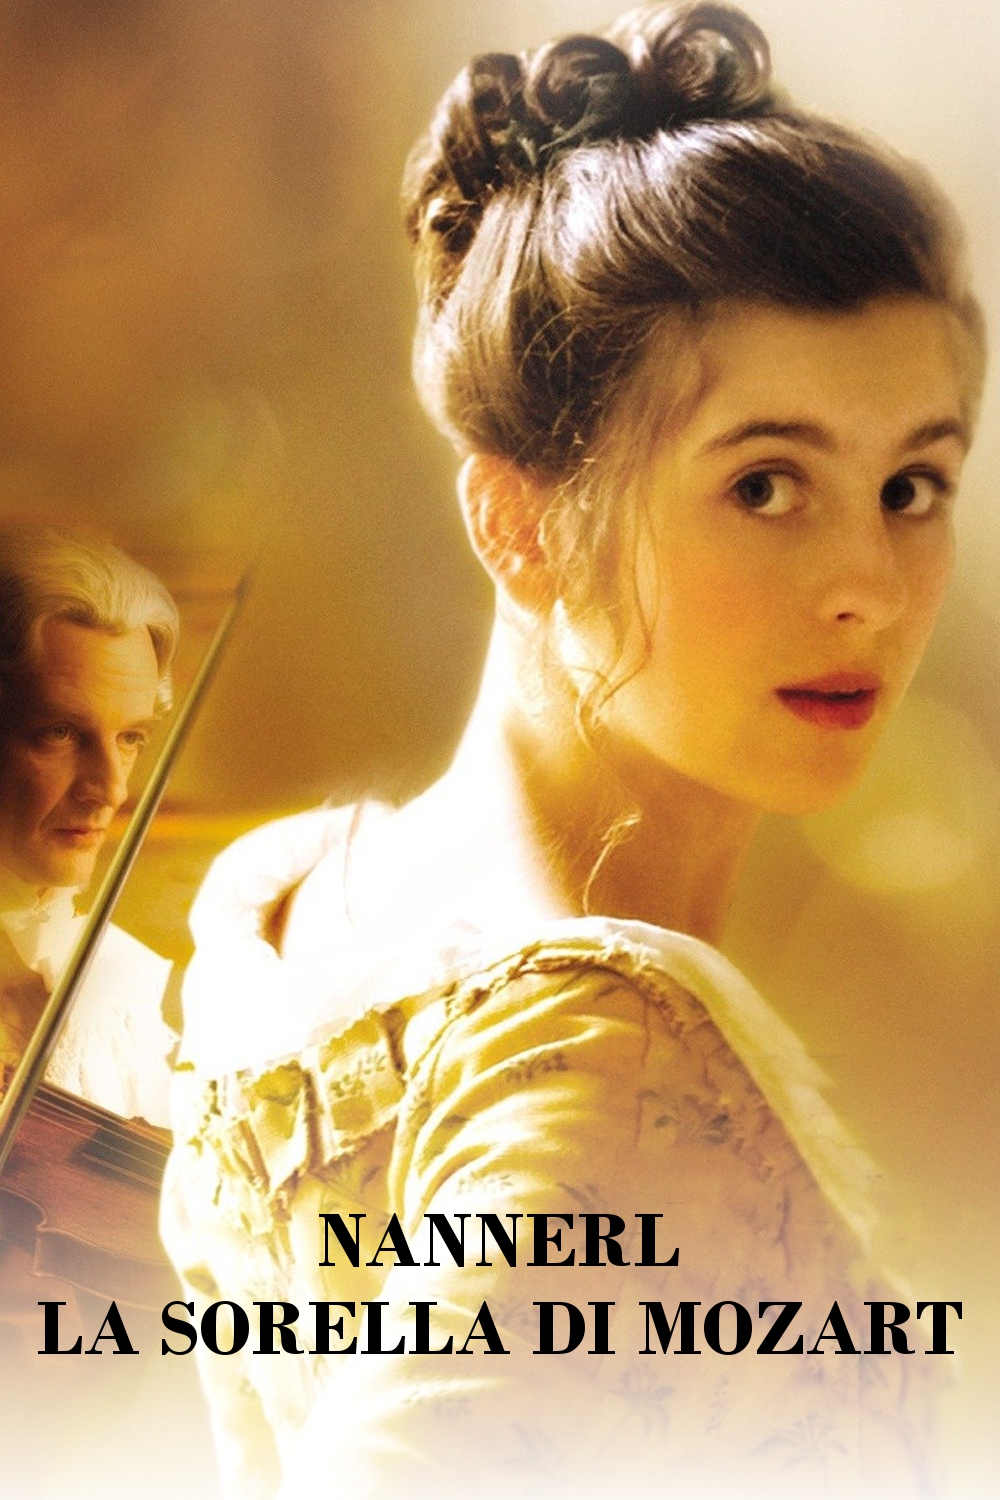 Nannerl – La sorella di Mozart (2010)